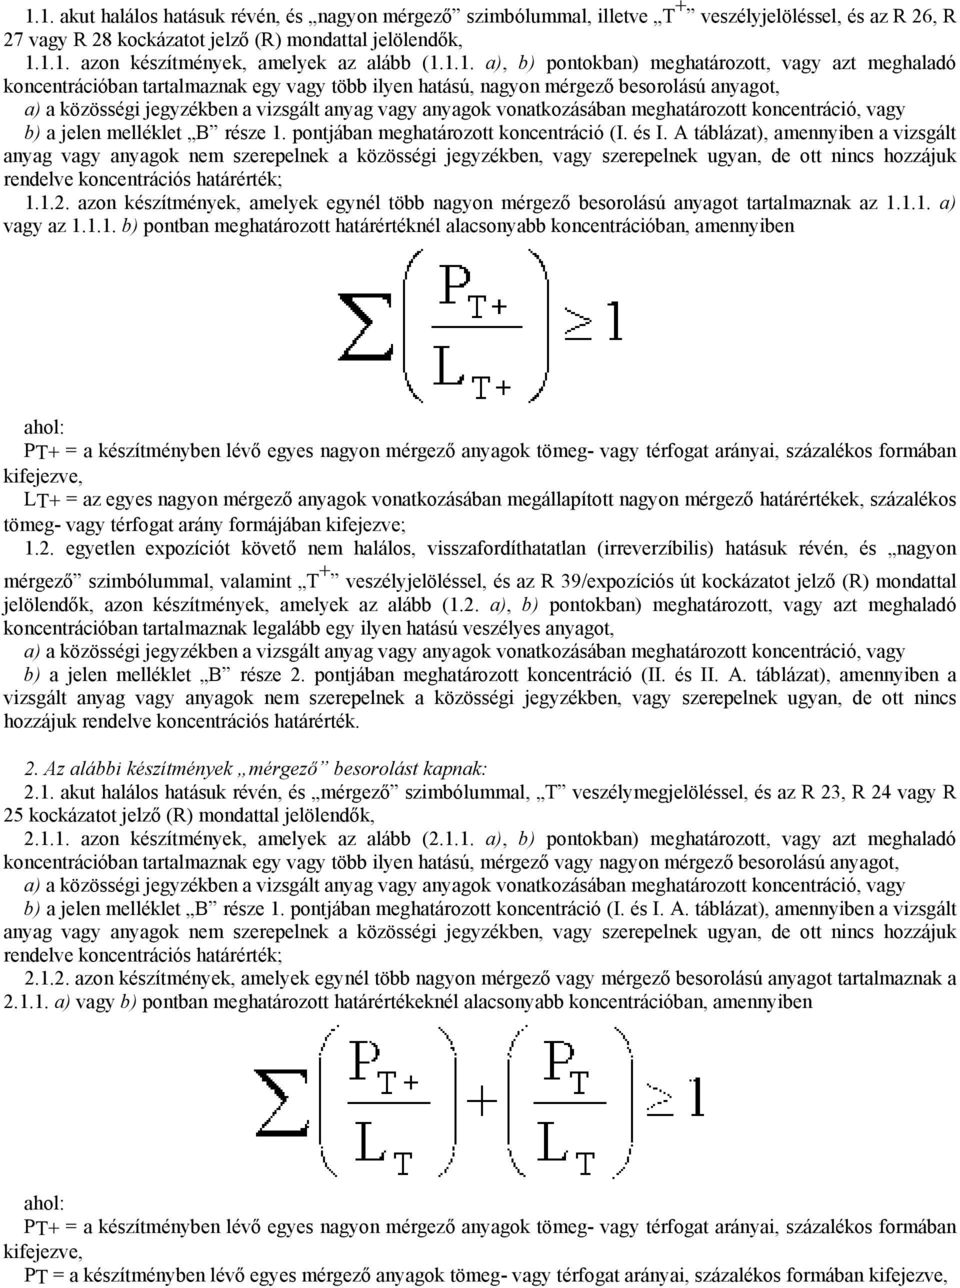 anyagok vonatkozásában meghatározott koncentráció, vagy b) a jelen melléklet B része 1. pontjában meghatározott koncentráció (I. és I.